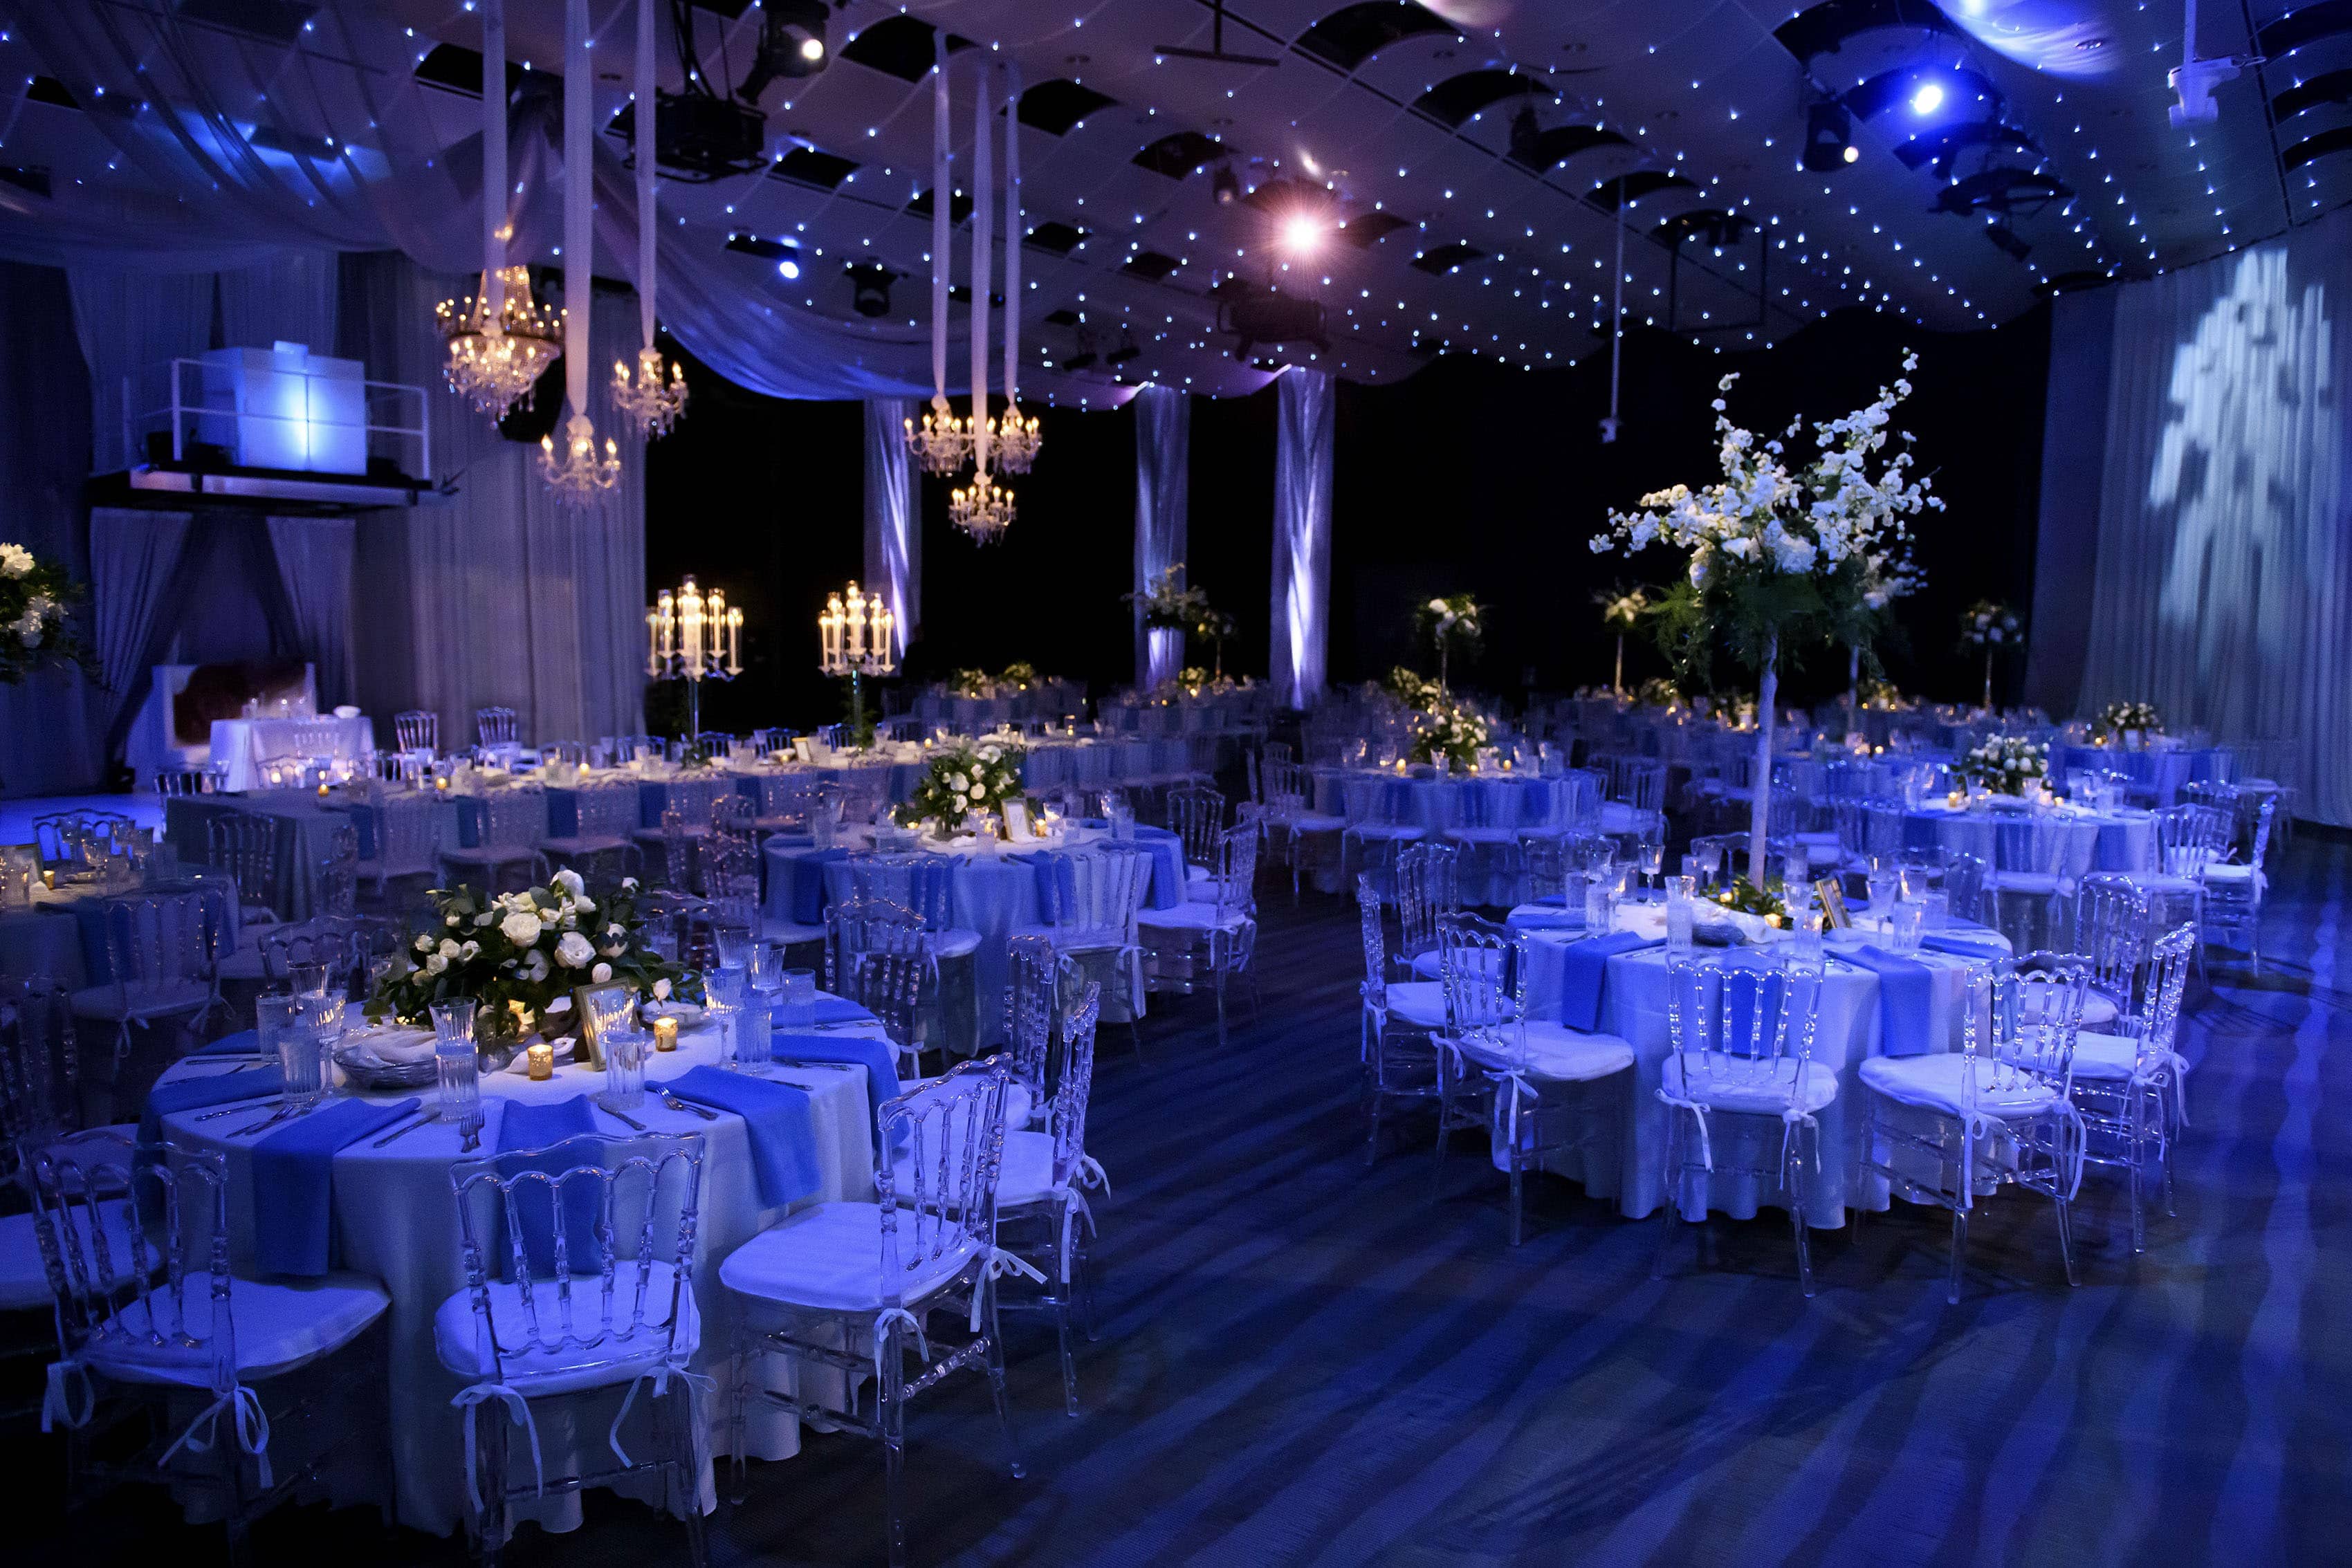 Seawell Ballroom setup for a Greek wedding reception